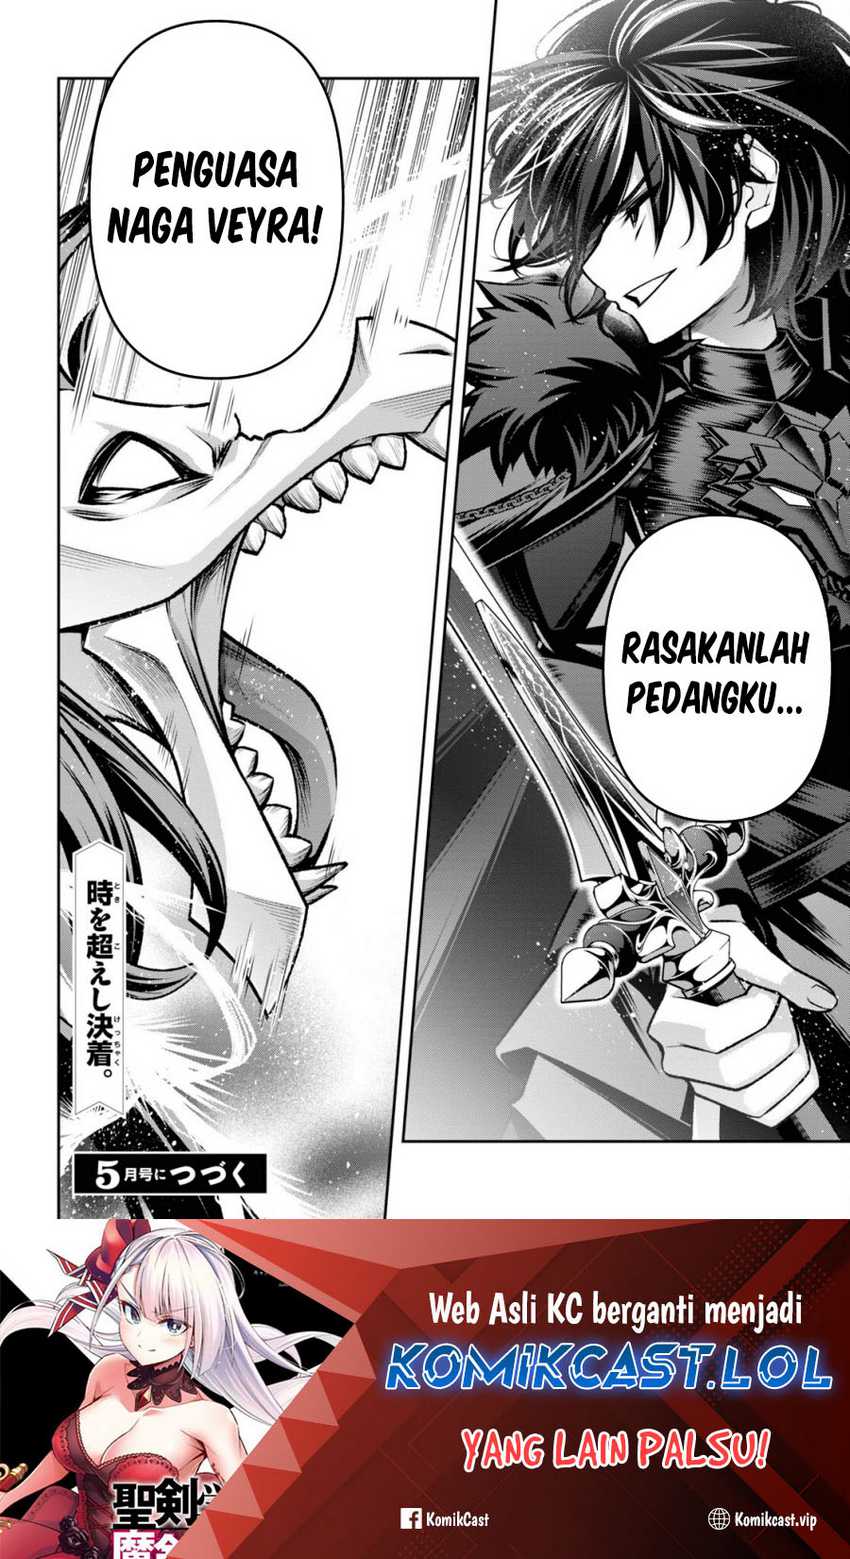 Demon’s Sword Master of Excalibur School Chapter 38